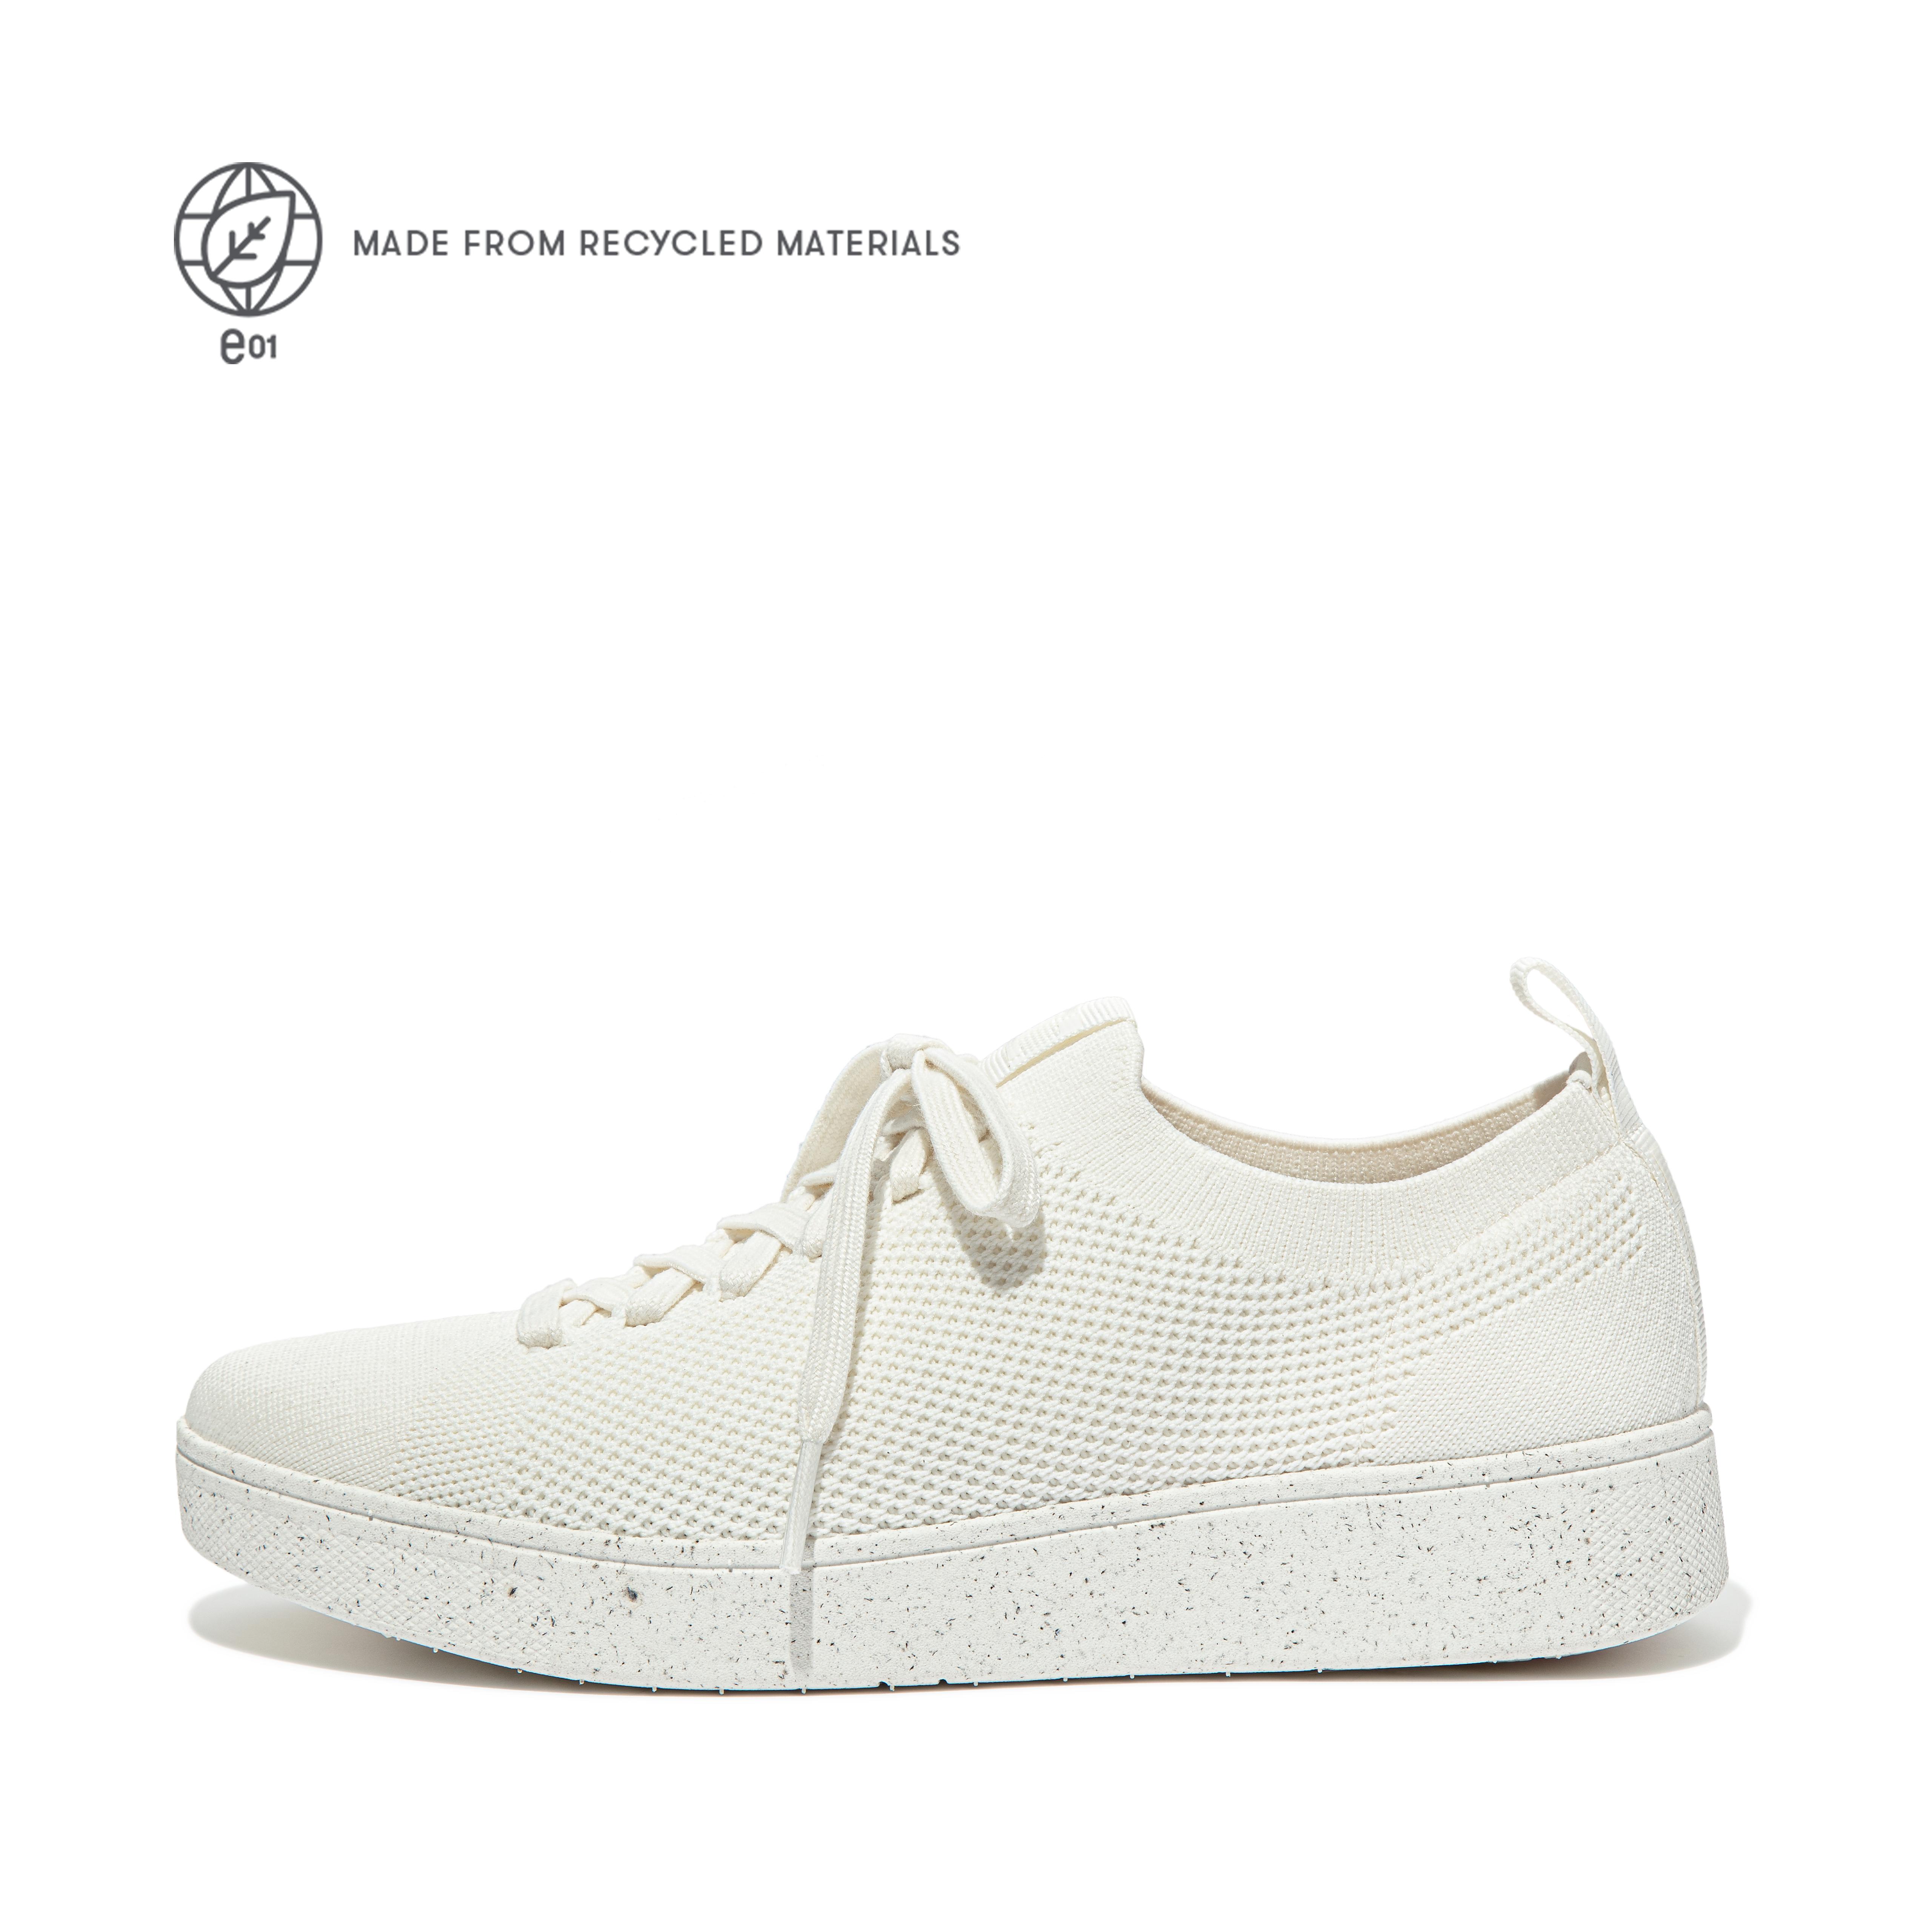 핏플랍 스니커즈 FitFlop RALLY e01 Multi-Knit Sneakers,Cream